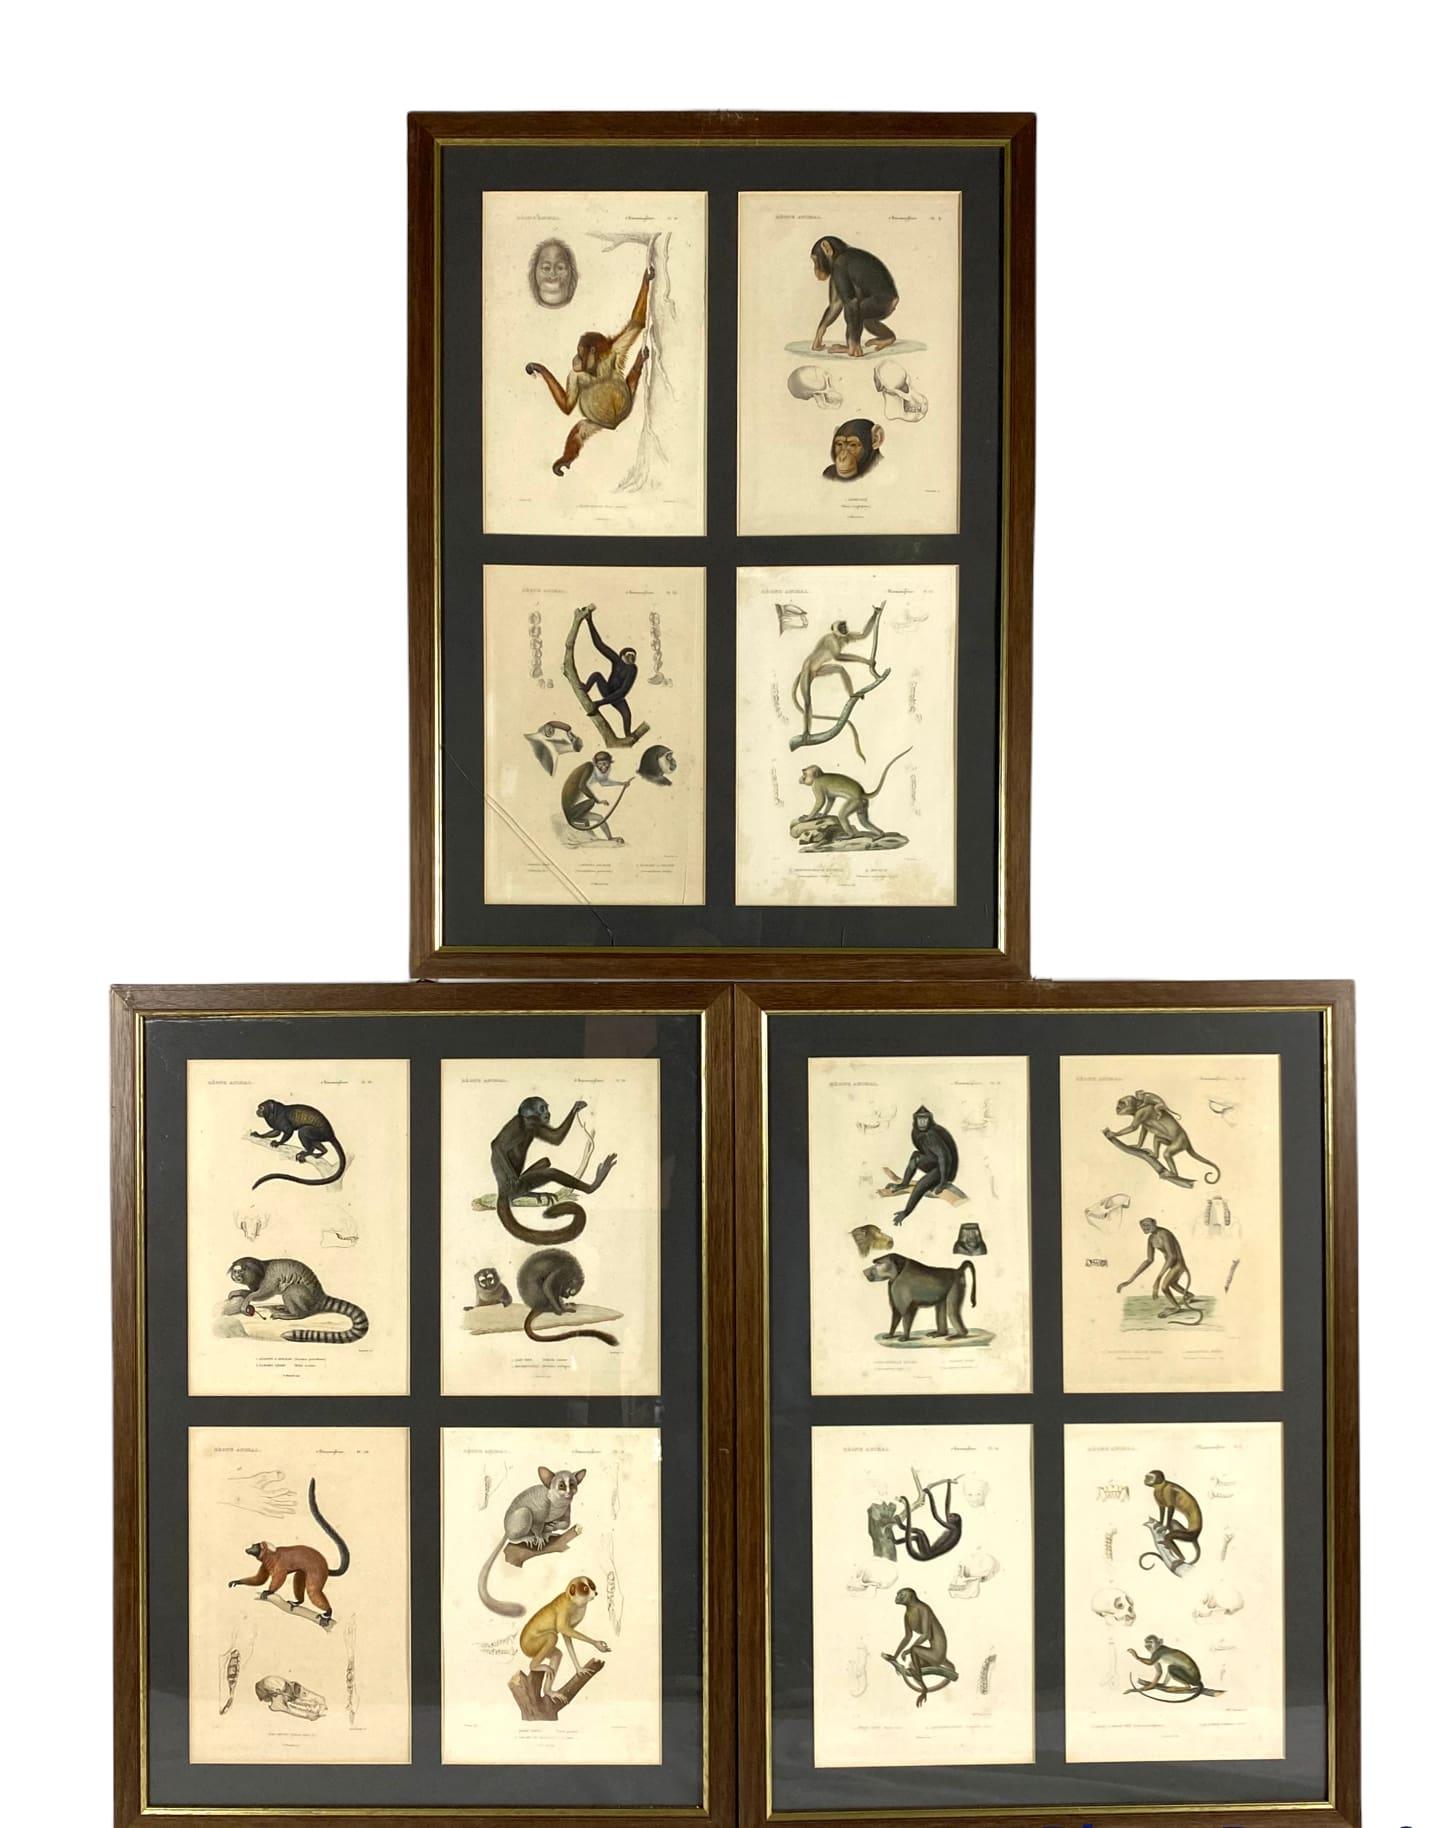 Paper Monkeys Prints, 12 Engravings from 